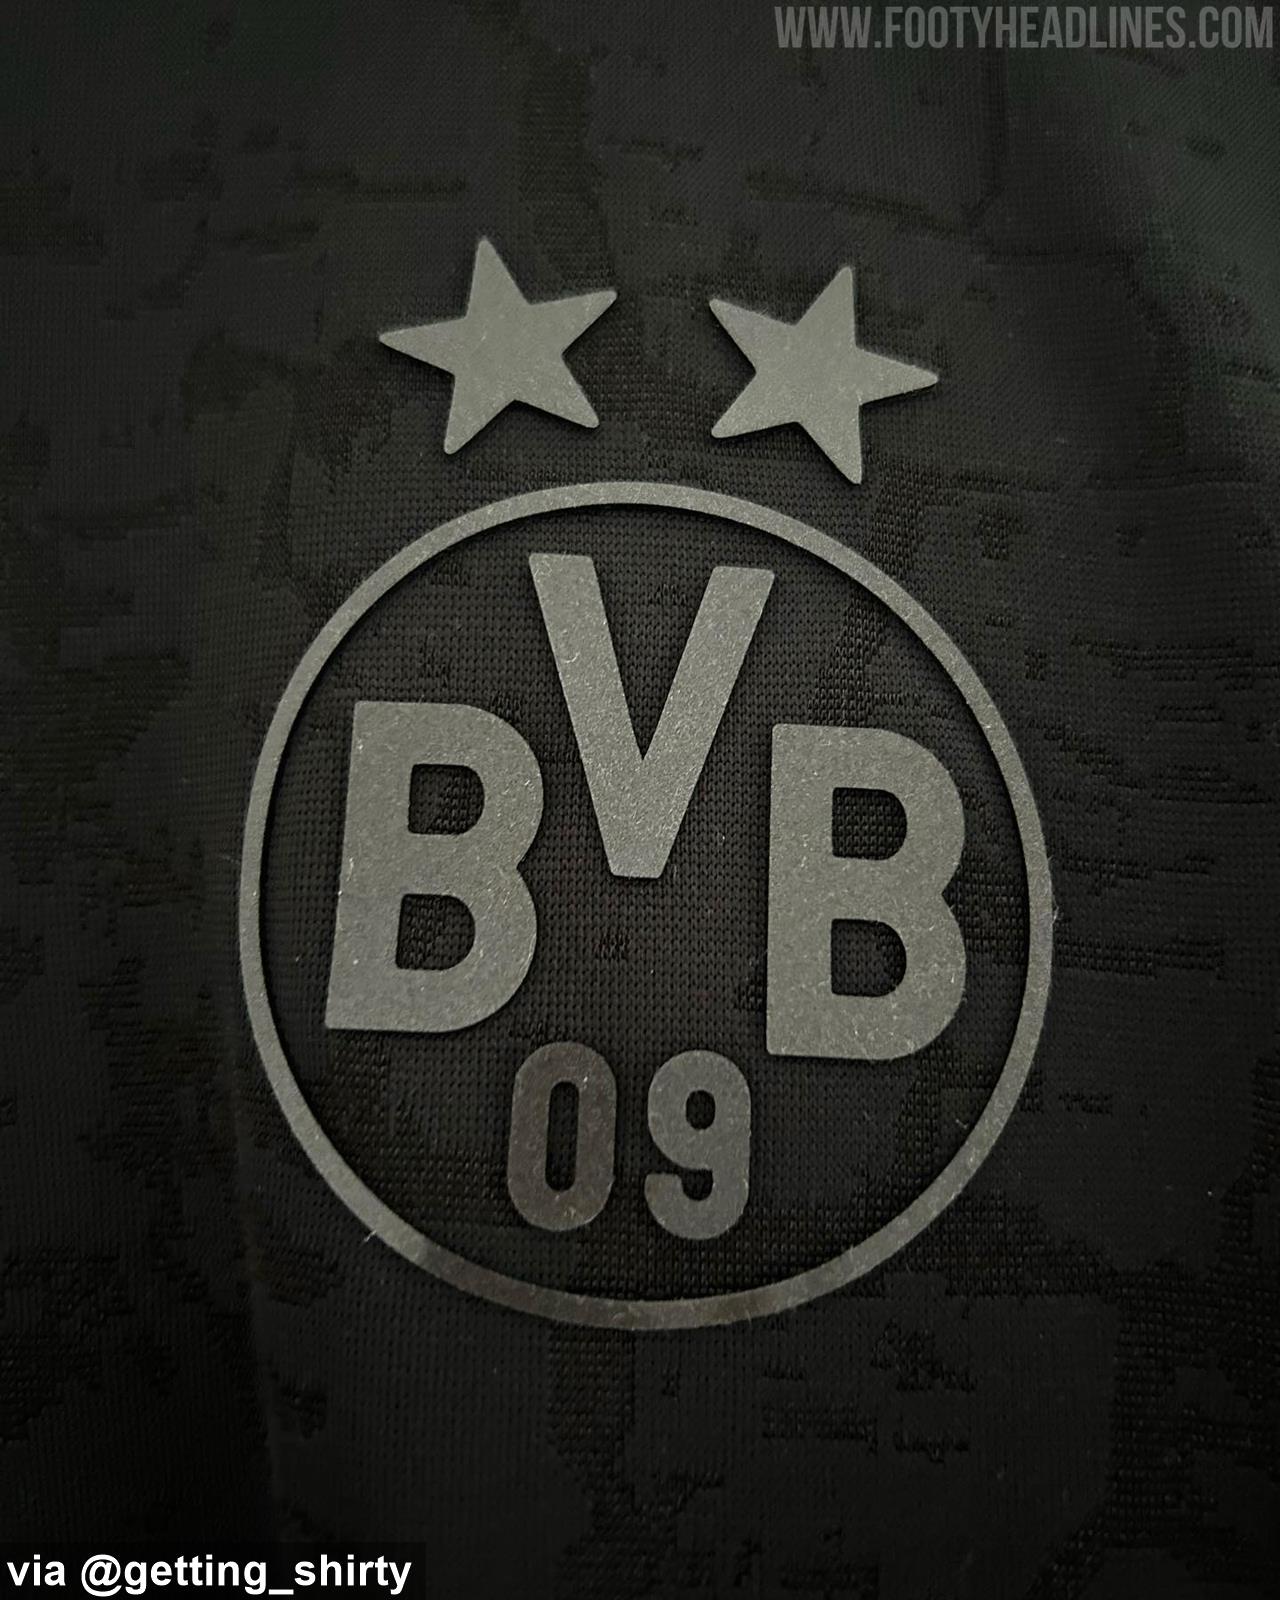 Dortmund All-Black 22-23 Special Kit Restocked - Footy Headlines